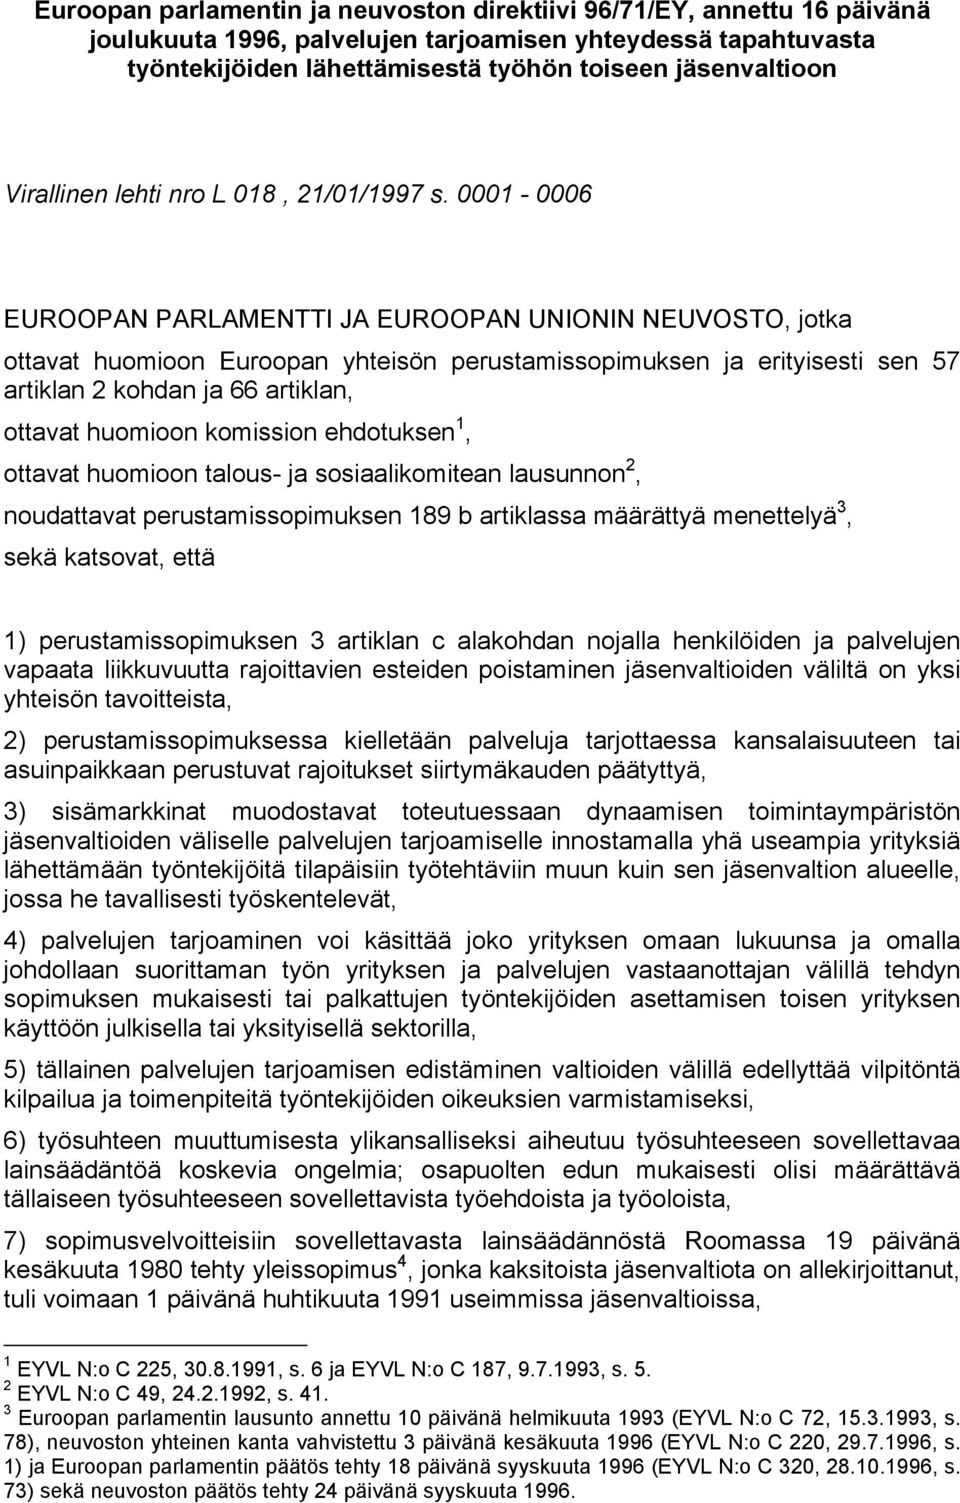 0001-0006 EUROOPAN PARLAMENTTI JA EUROOPAN UNIONIN NEUVOSTO, jotka ottavat huomioon Euroopan yhteisön perustamissopimuksen ja erityisesti sen 57 artiklan 2 kohdan ja 66 artiklan, ottavat huomioon